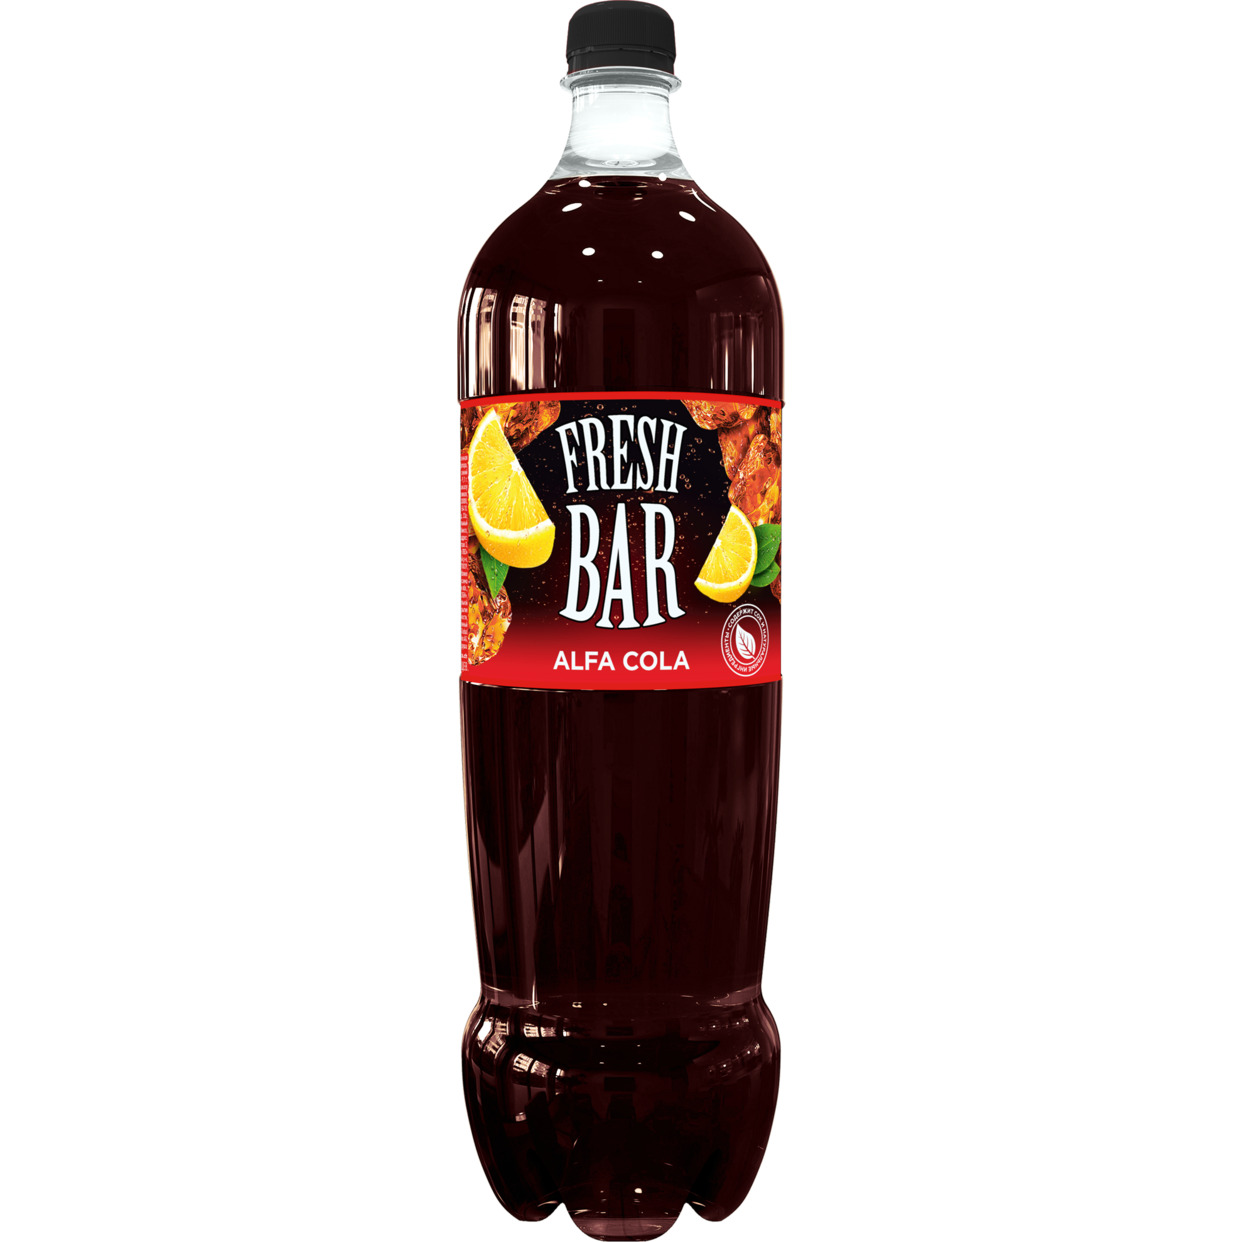 Напиток Fresh Bar Альфа Кола 1.0 безалкогольный сильногазированный ПЭТ 1,5л по акции в Пятерочке